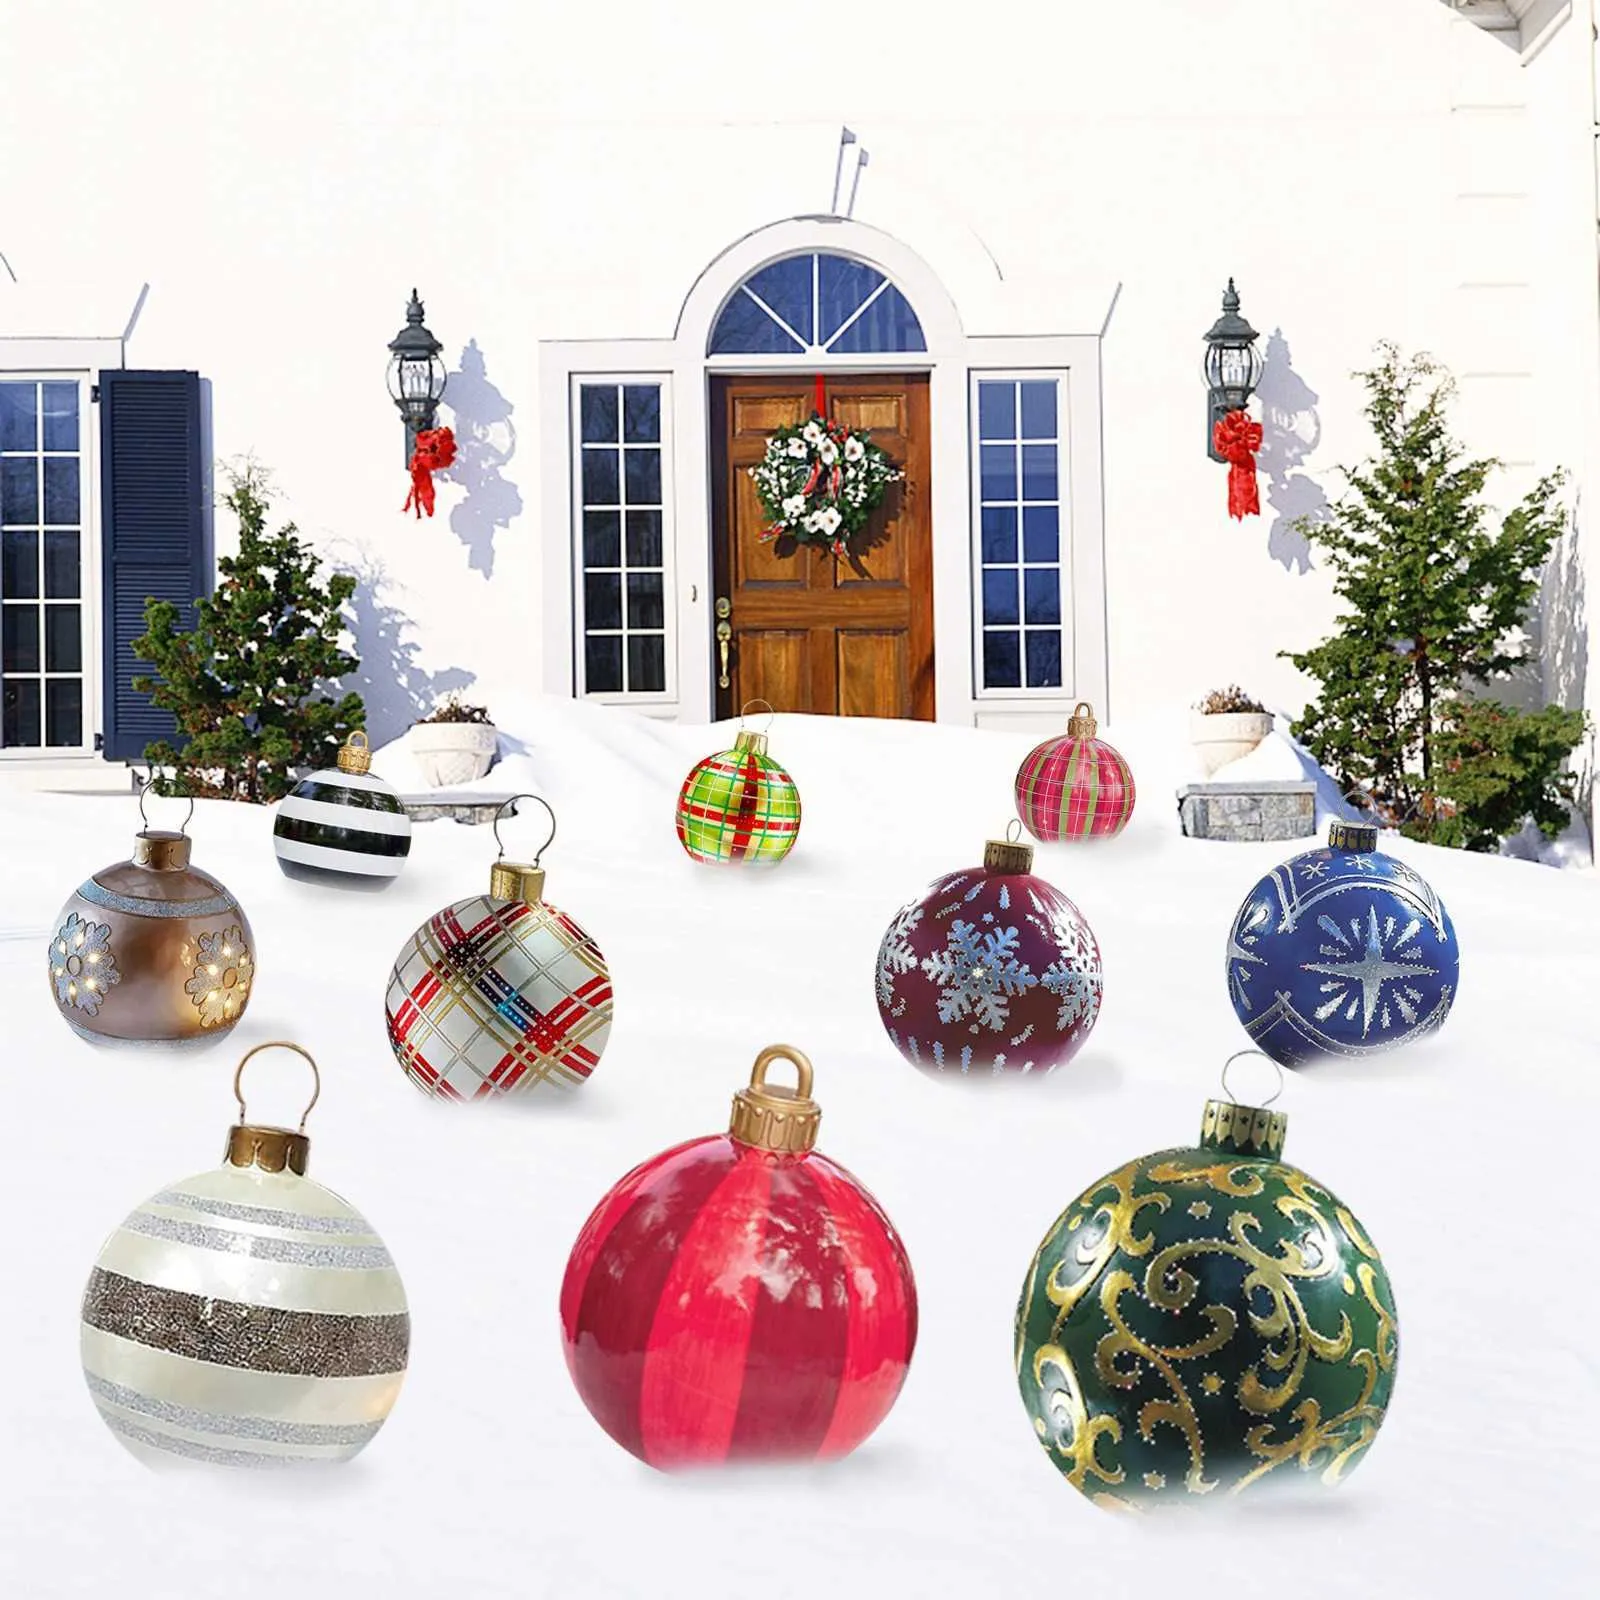 Palla decorata natalizia gonfiabile all'aperto realizzata in PVC 23 6 pollici Decorazioni alberi giganti Decorazioni le vacanze 211019280P